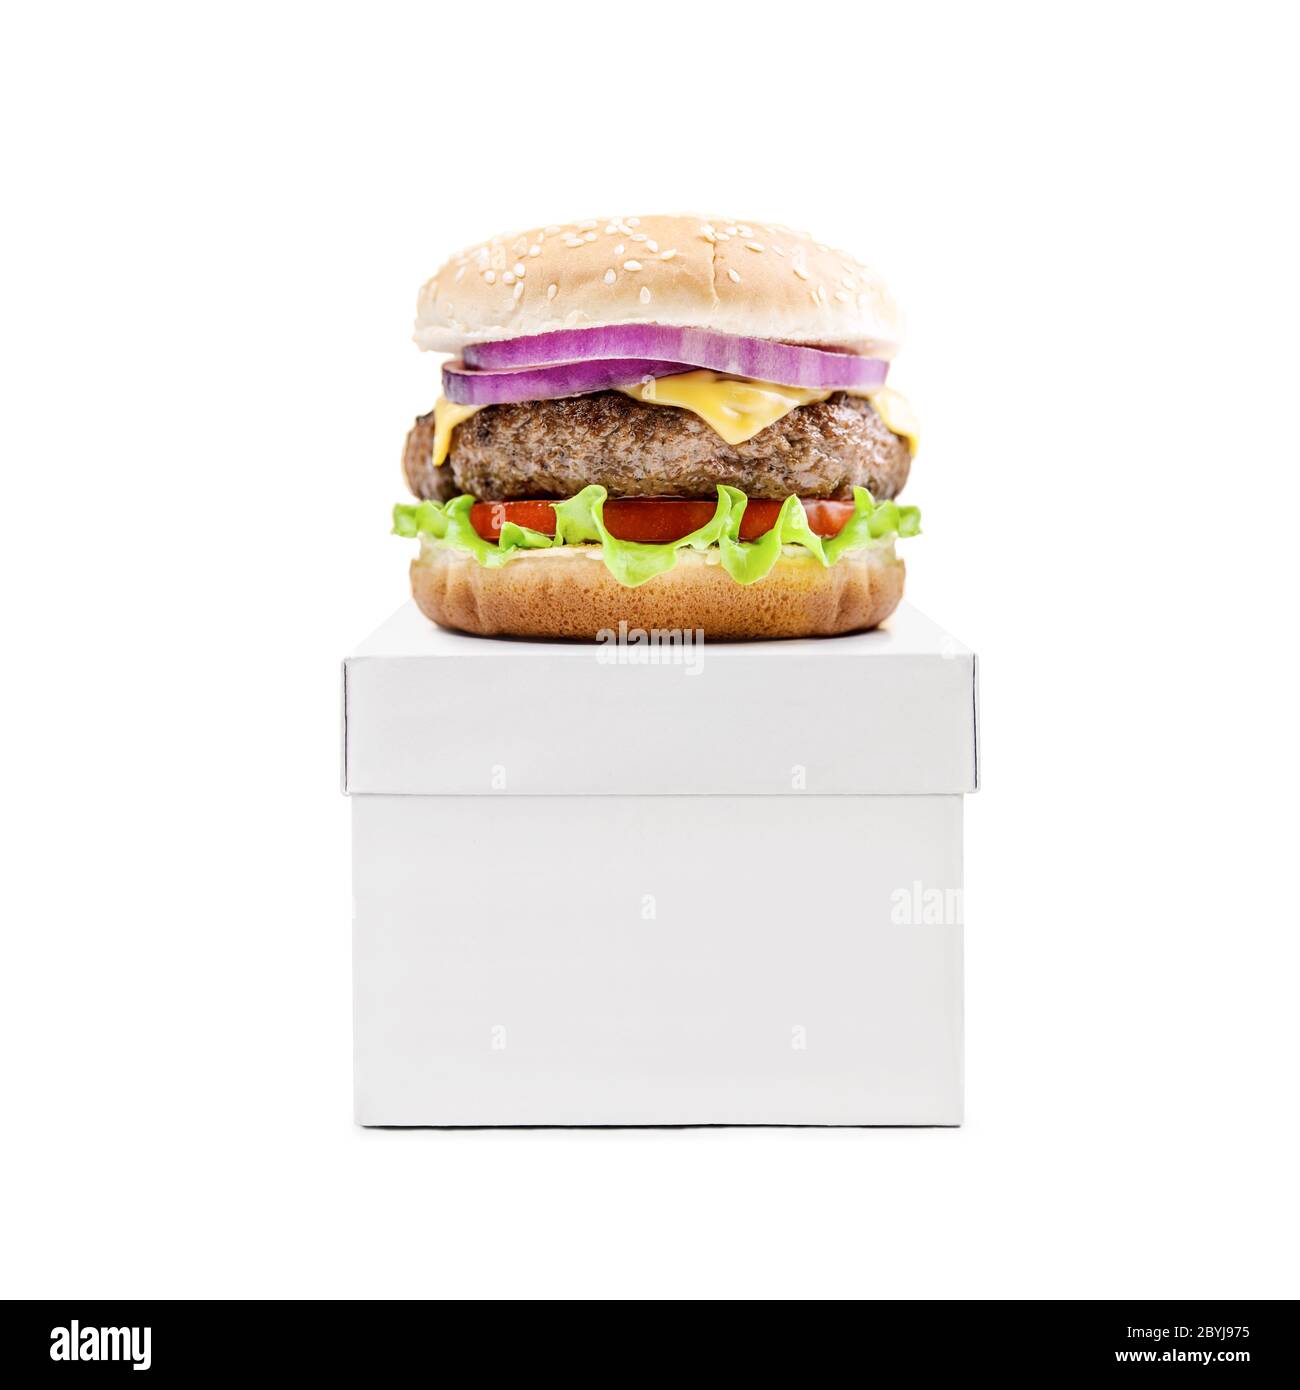 Hamburger Cheeseburger Burger auf weißer Box isoliert auf weißem Hintergrund. Konzept für die Lieferung von Lebensmitteln Stockfoto